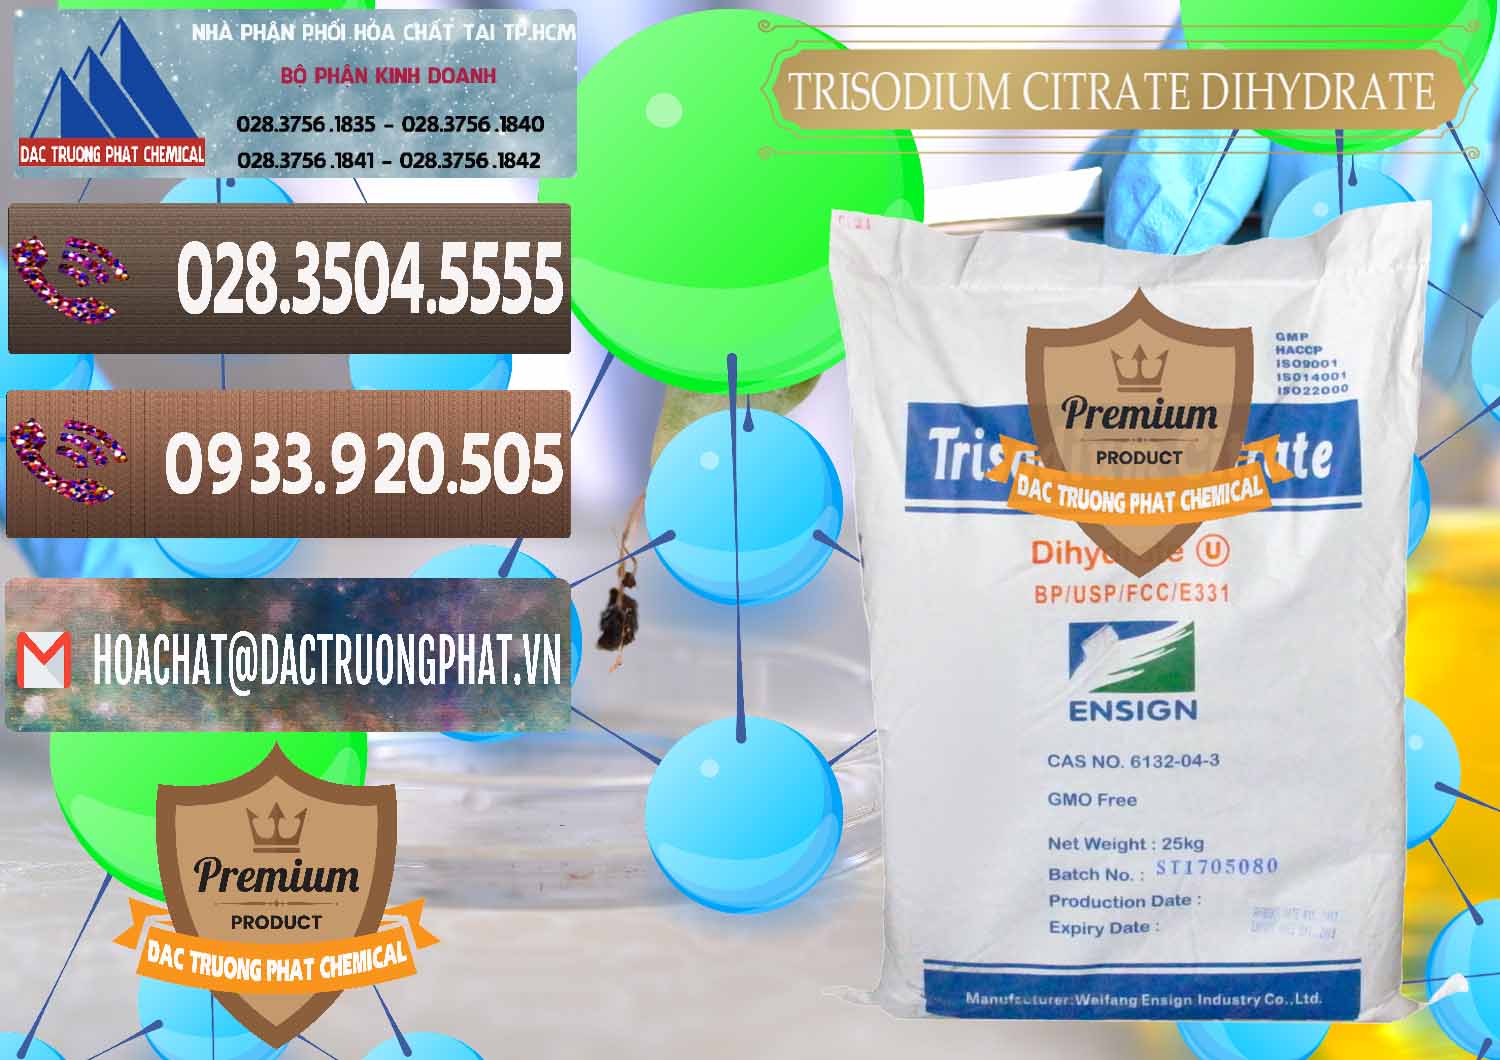 Đơn vị chuyên kinh doanh - bán Trisodium Citrate Dihydrate - Na3C6H5O7 Weifang Trung Quốc China - 0324 - Công ty cung cấp - phân phối hóa chất tại TP.HCM - hoachatviet.net